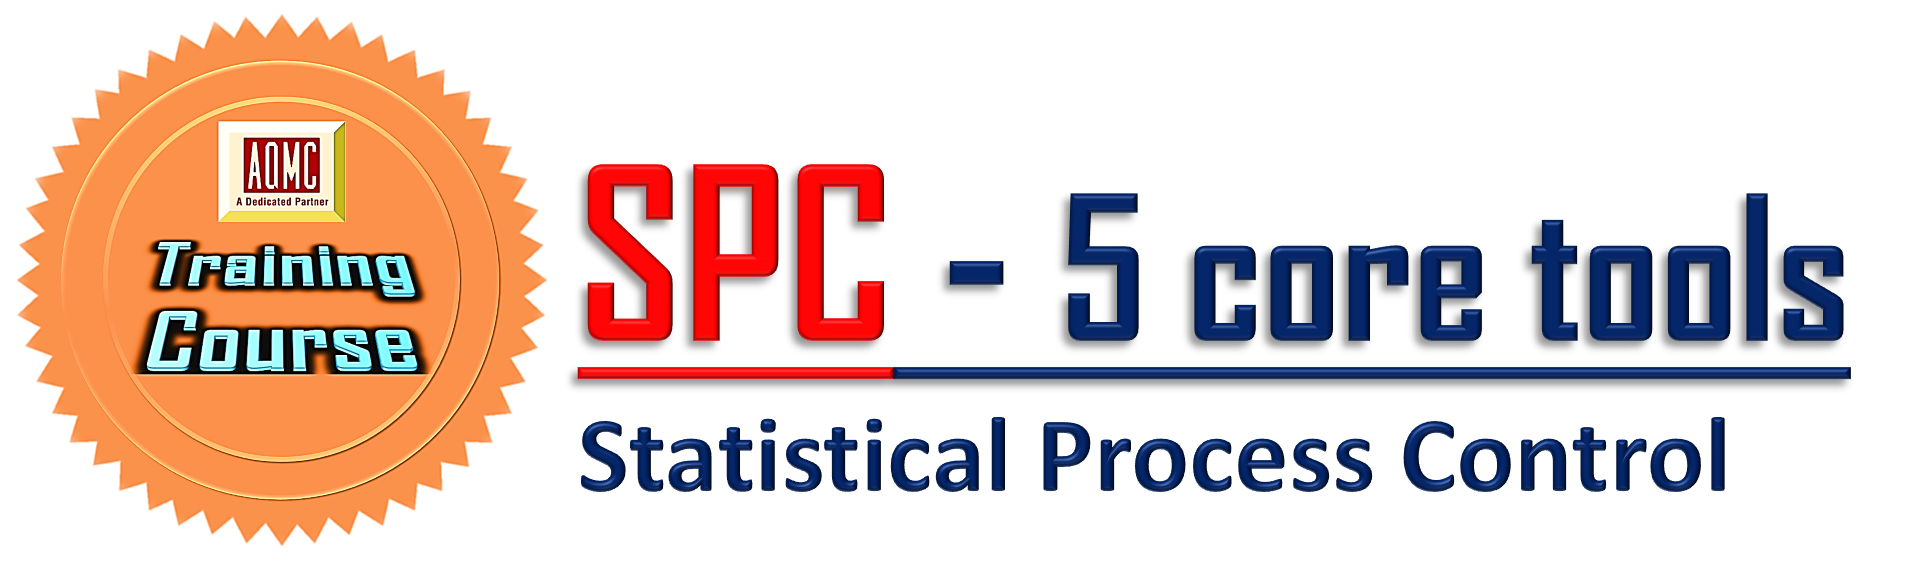 Đào tạo SPC - Kiểm soát quá trình bằng thống kê